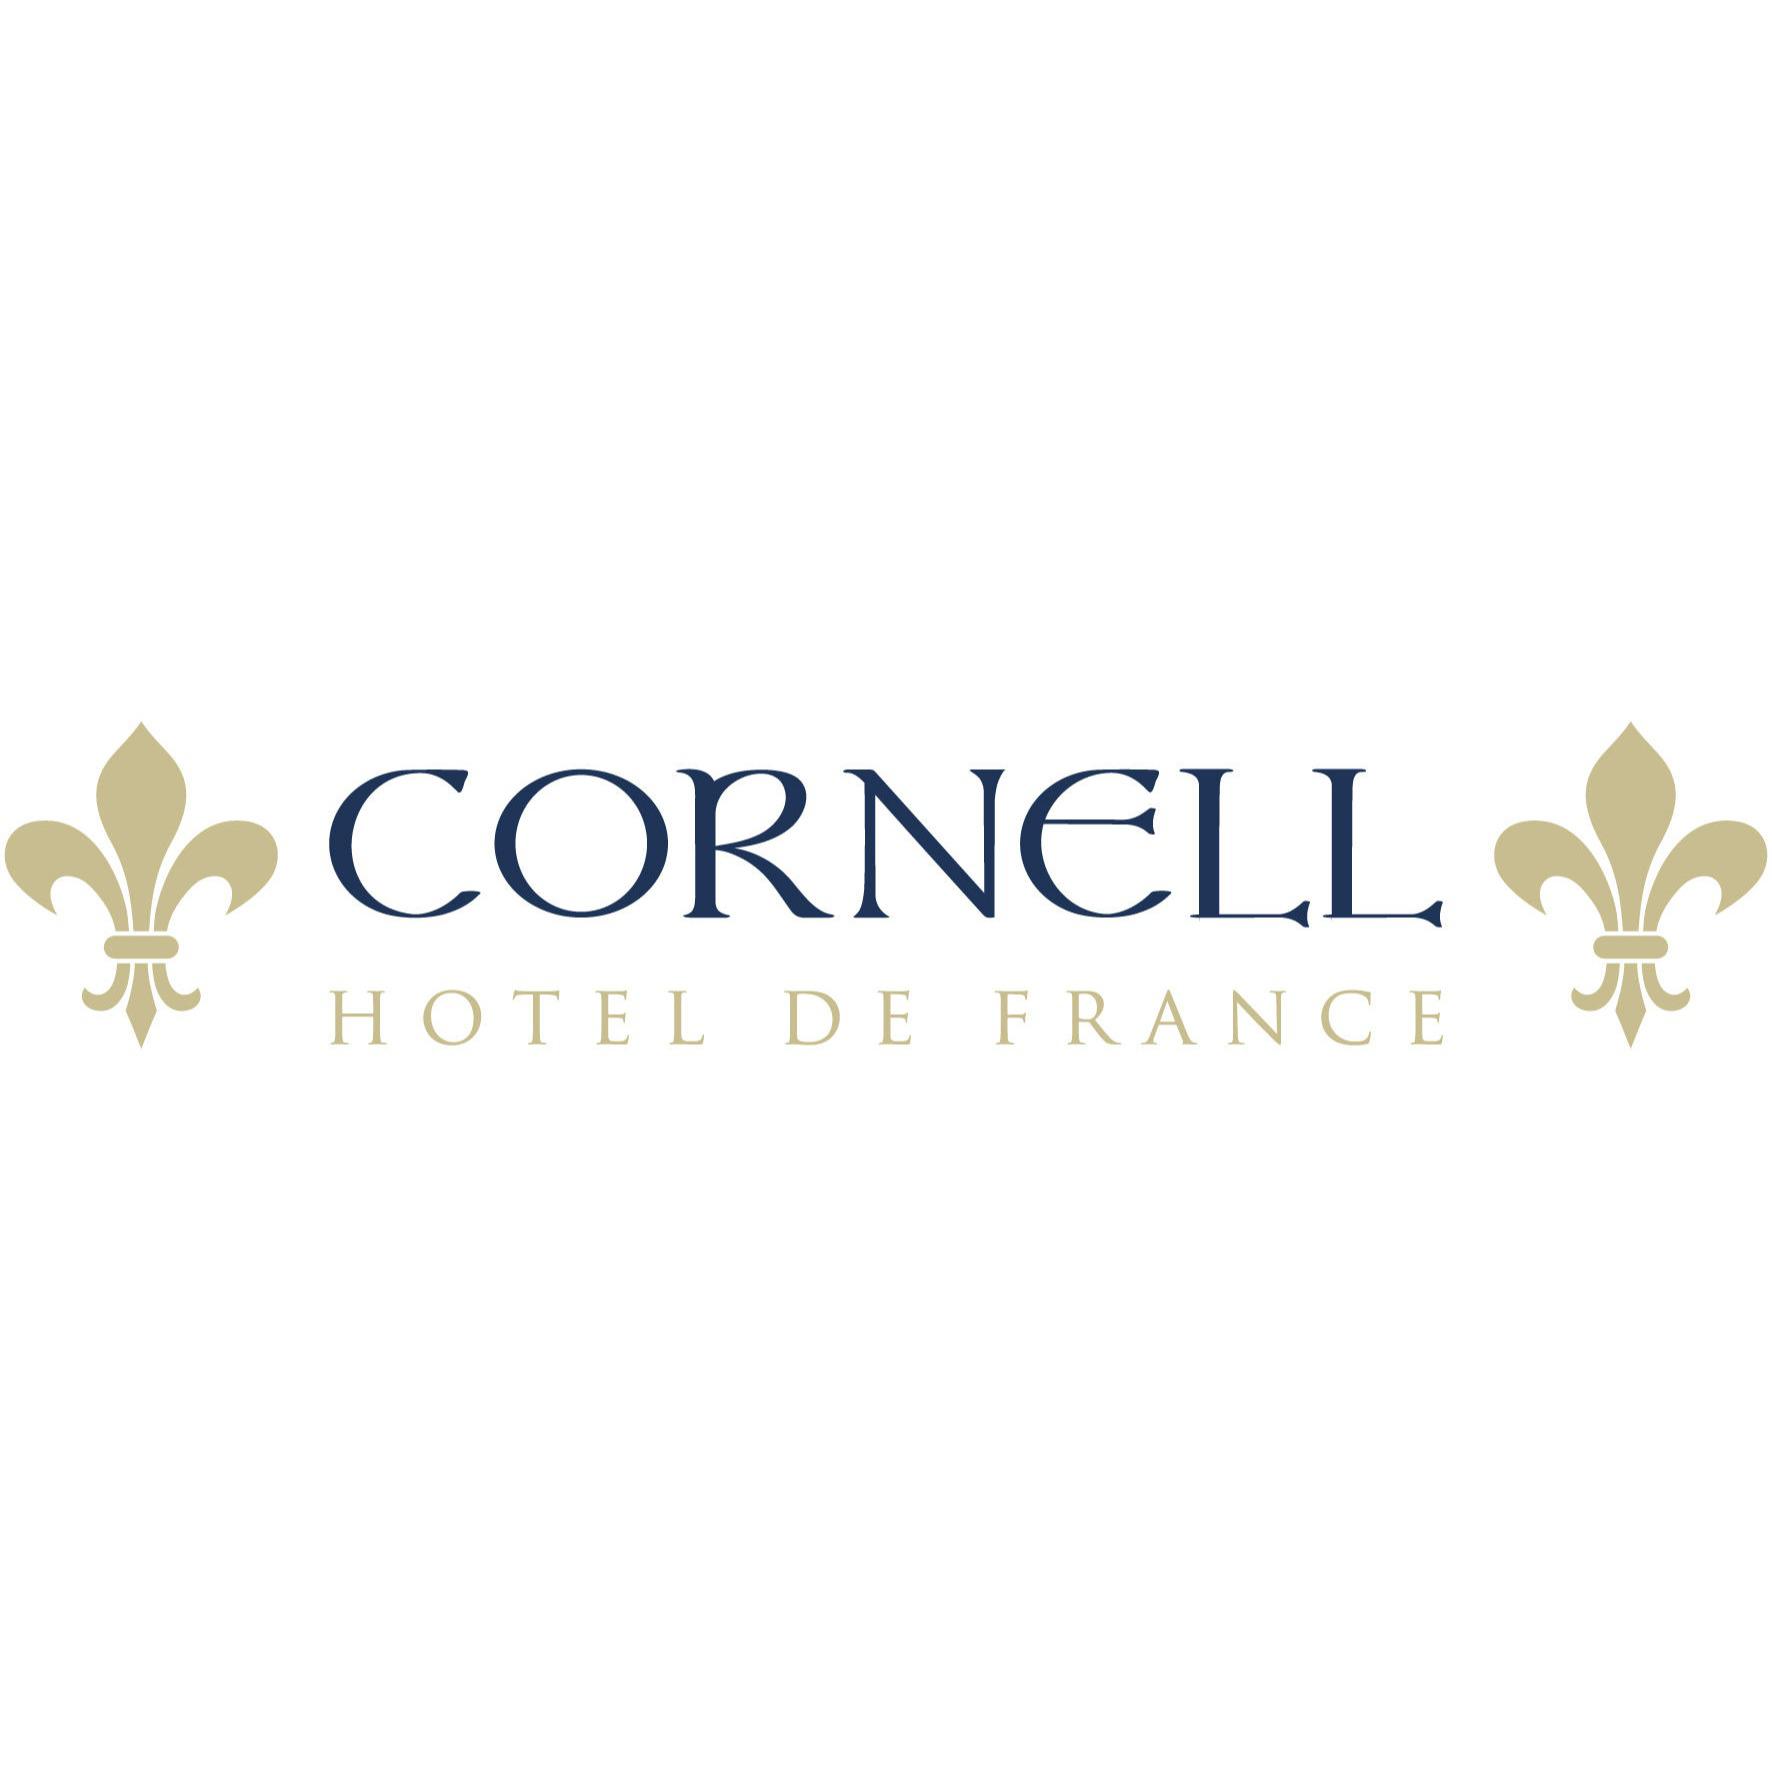 Cornell Hotel De France, San Francisco - San Francisco, CA 94108 - (415)421-3154 | ShowMeLocal.com